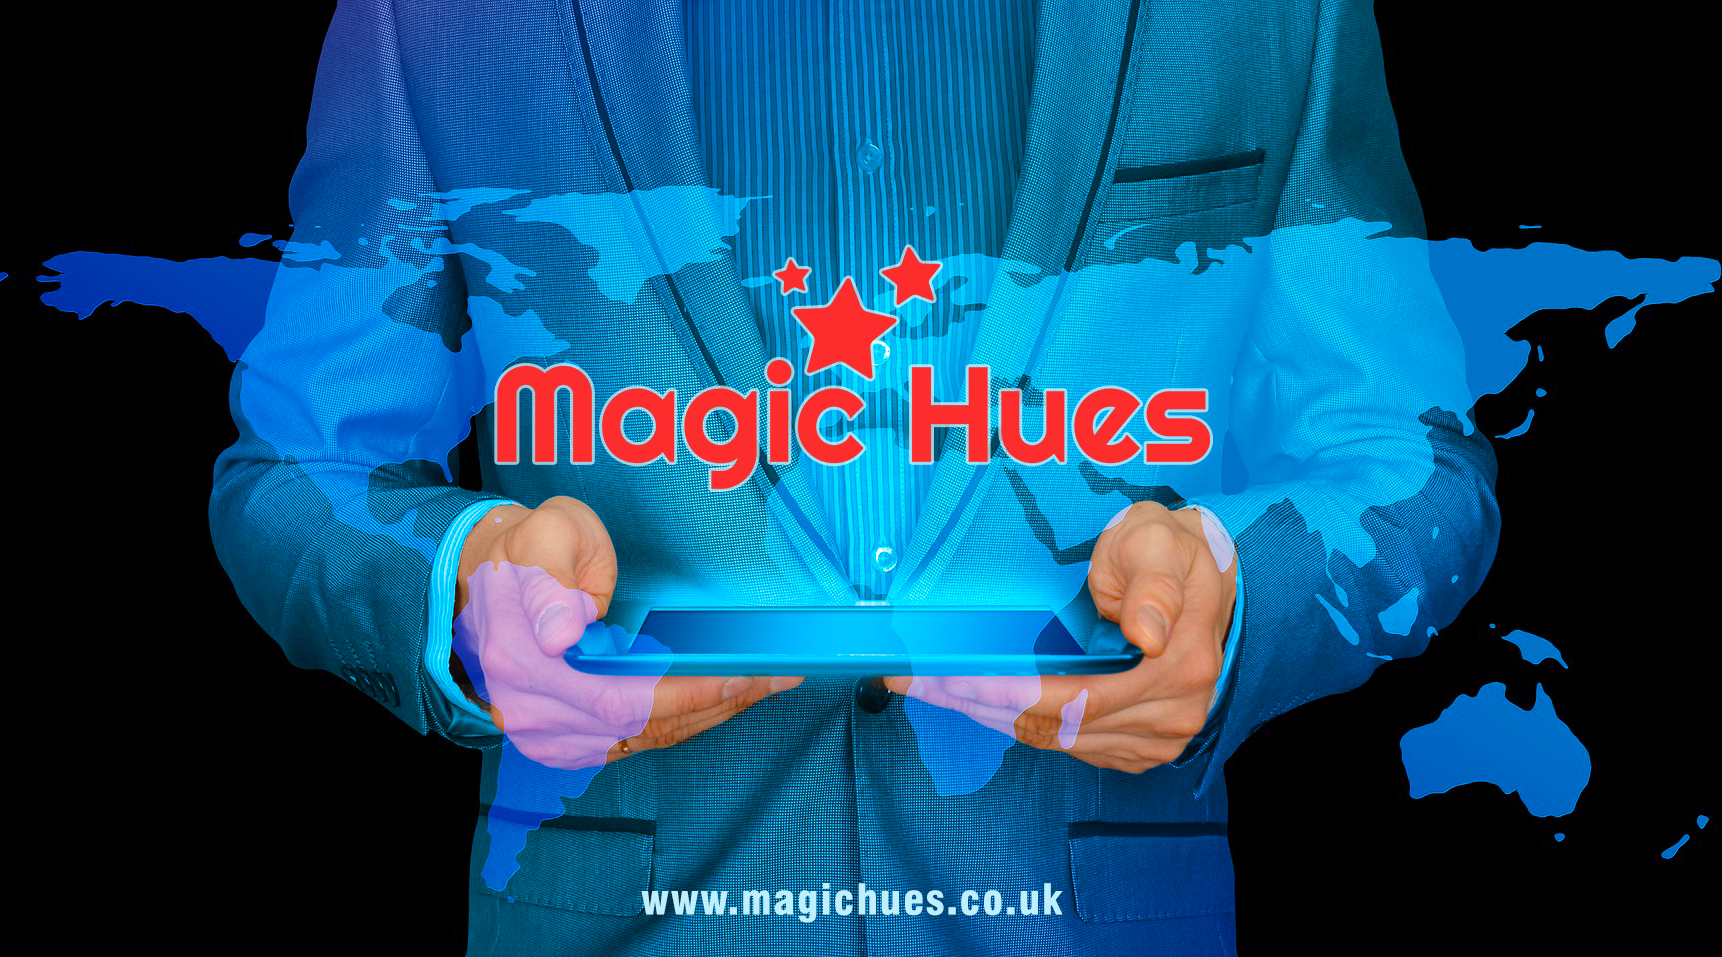 (c) Magichues.co.uk